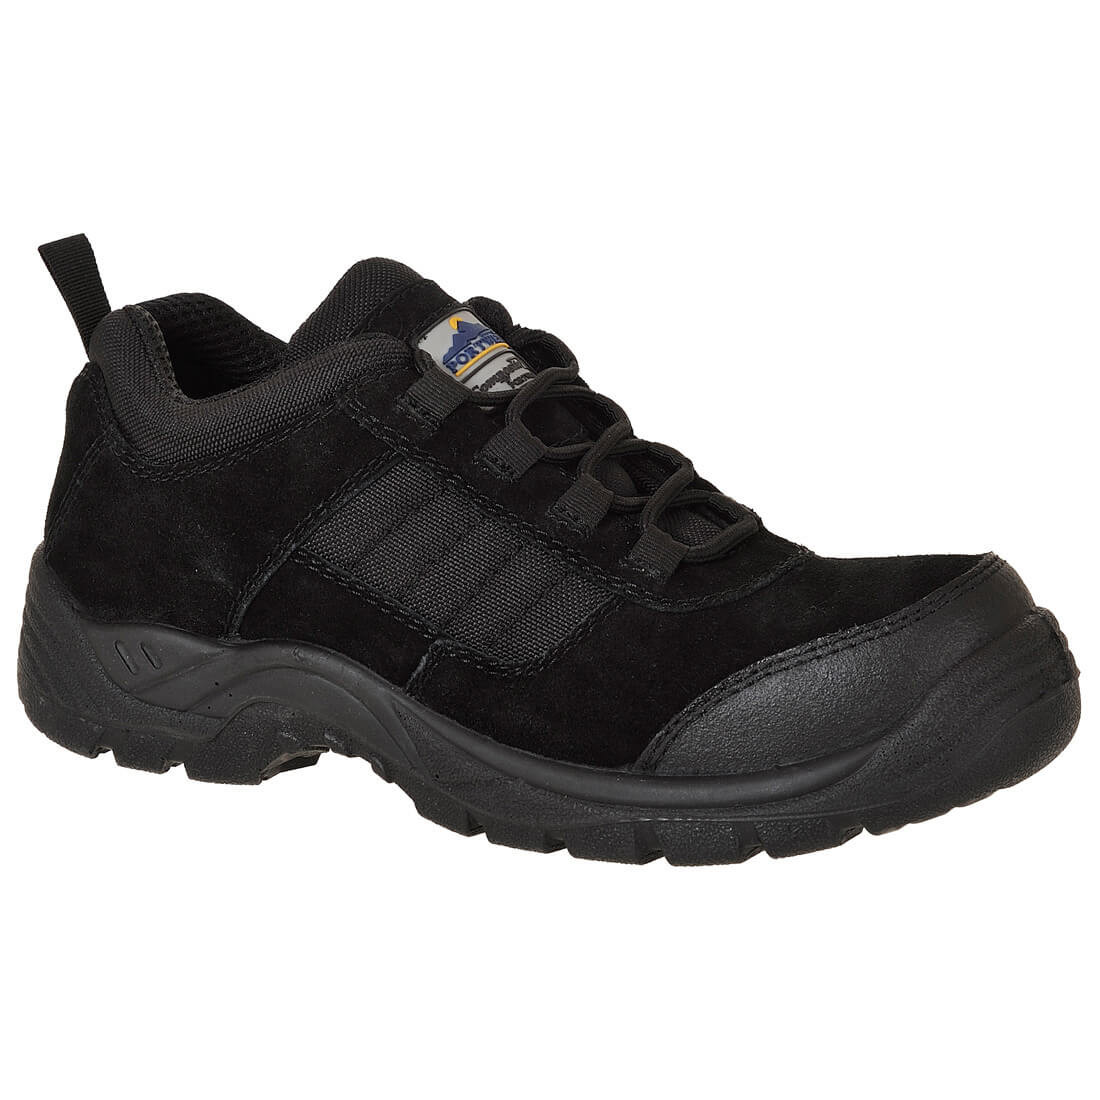 Chaussure S1 Trouper Compositelite™ - Les chaussures de protection